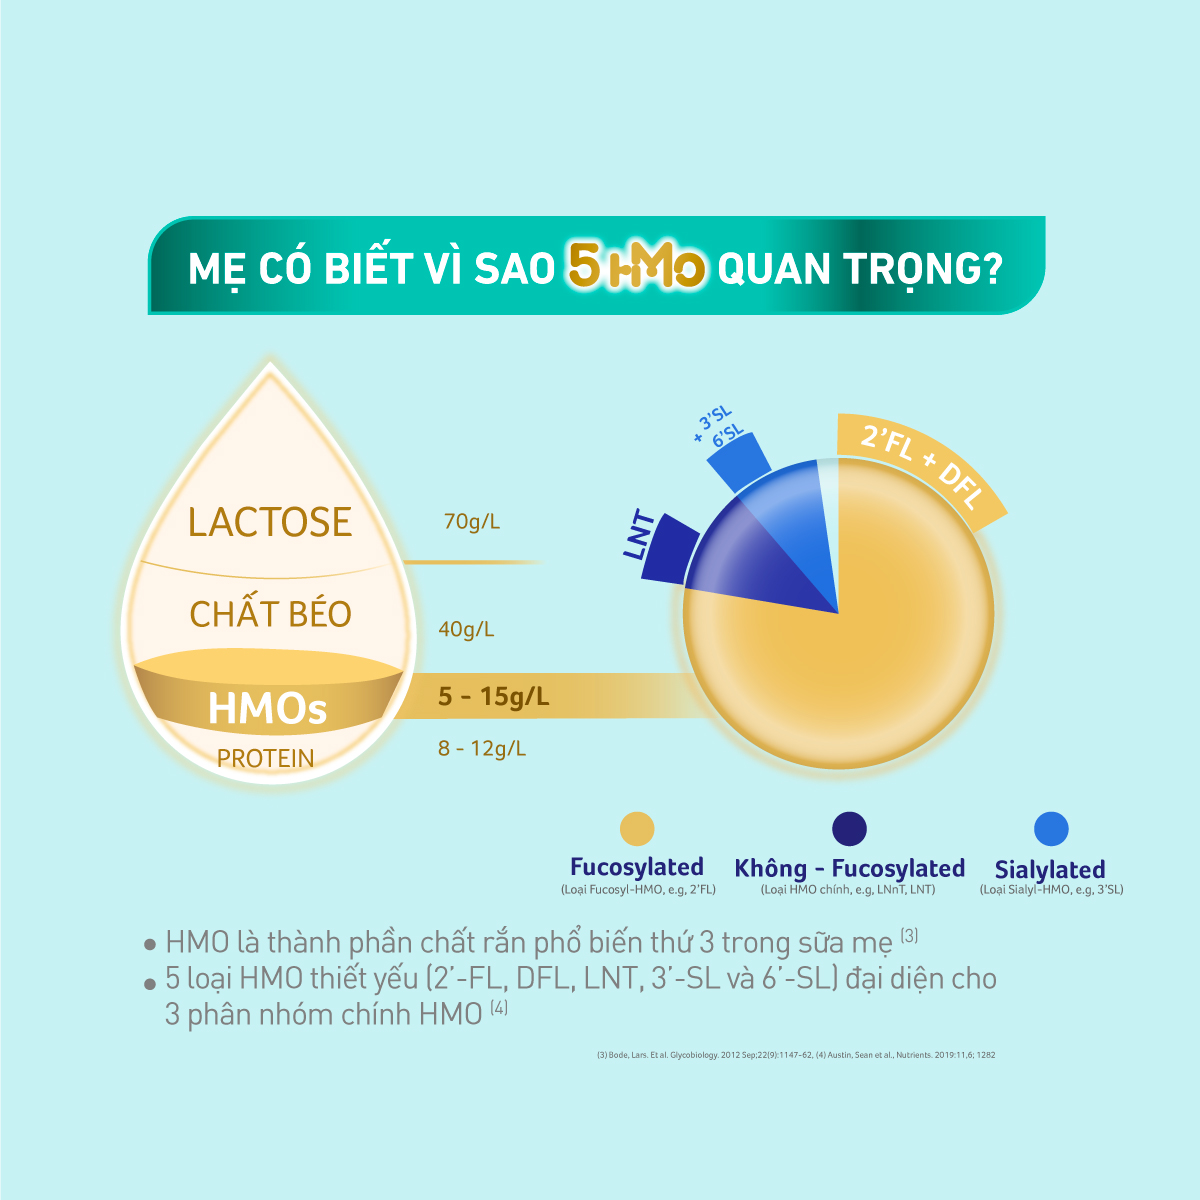 Sữa bột Nestlé NAN OPTIPRO PLUS 4 1500g/lon với 5HMO Giúp tiêu hóa tốt + Tăng cường đề kháng - Tặng Bộ Lego Xe Lửa (2 - 6 tuổi)